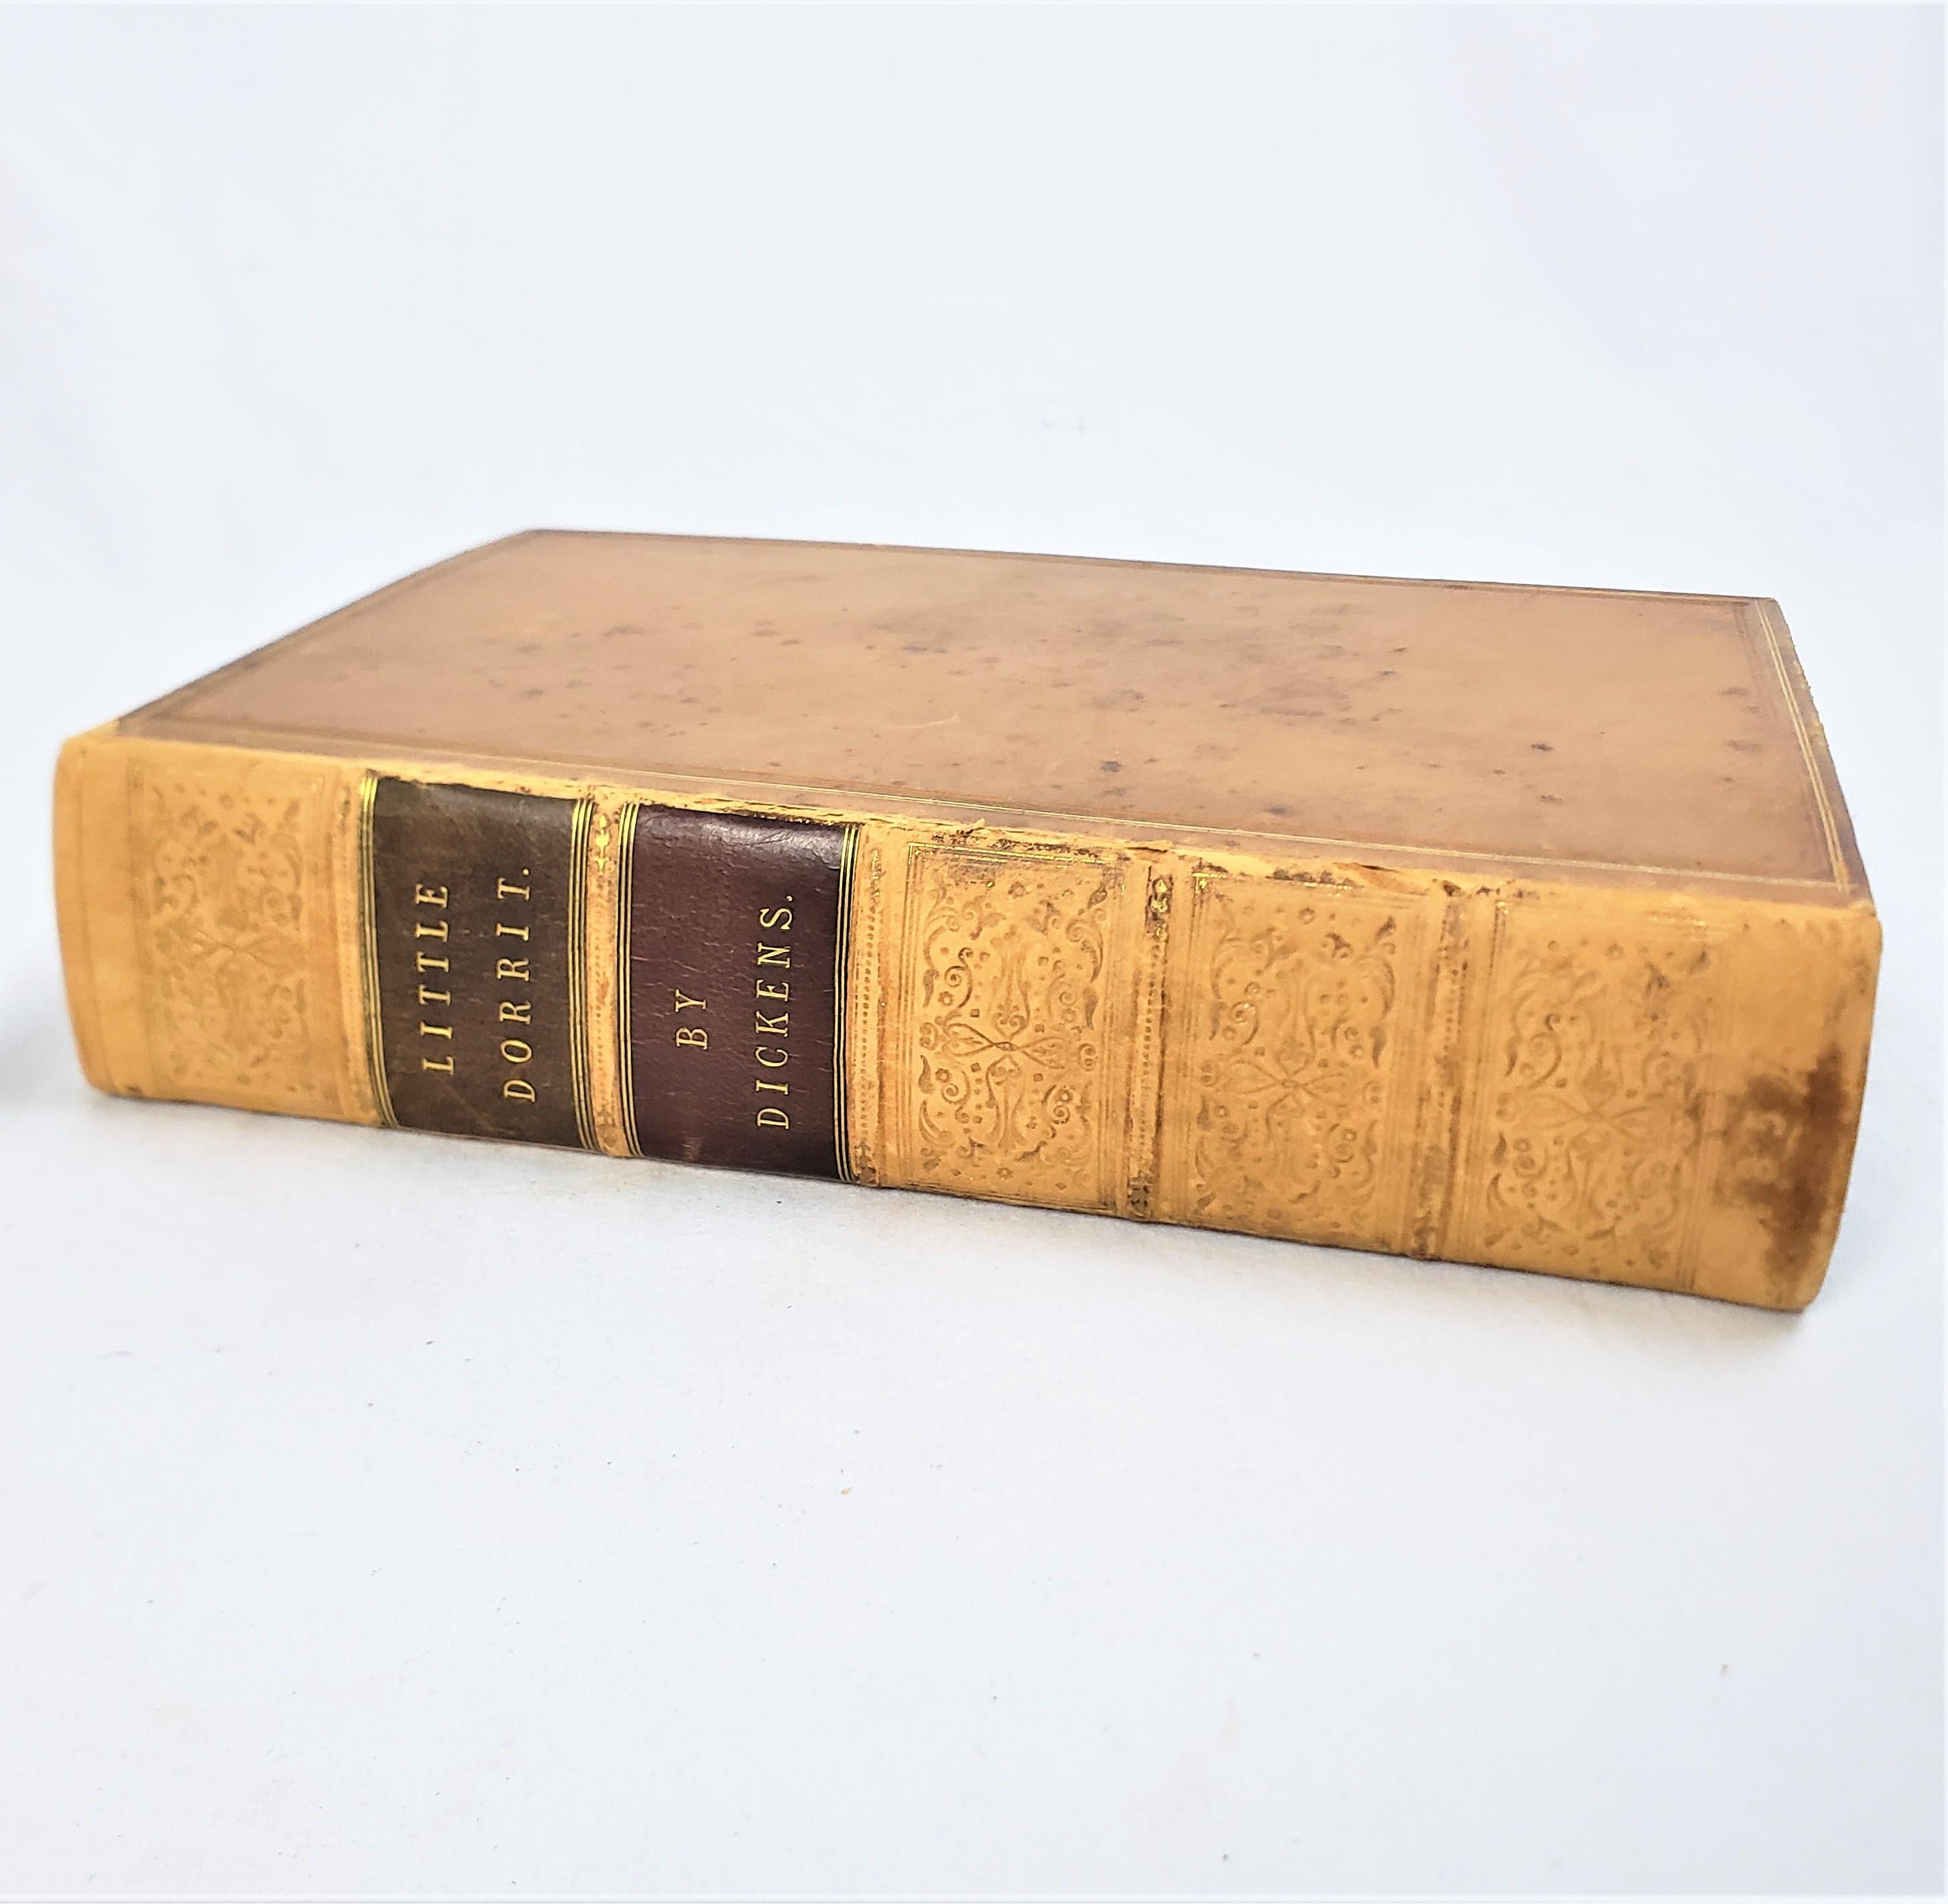 Diese antike 1. Ausgabe Buch mit dem Titel Little Dorrit wurde von Charles Dickens verfasst und veröffentlicht von Chapman und Hall von England im Jahr 1857 in der Zeit viktorianischen Stil mit Radierungen von Hablot Knight Browne 